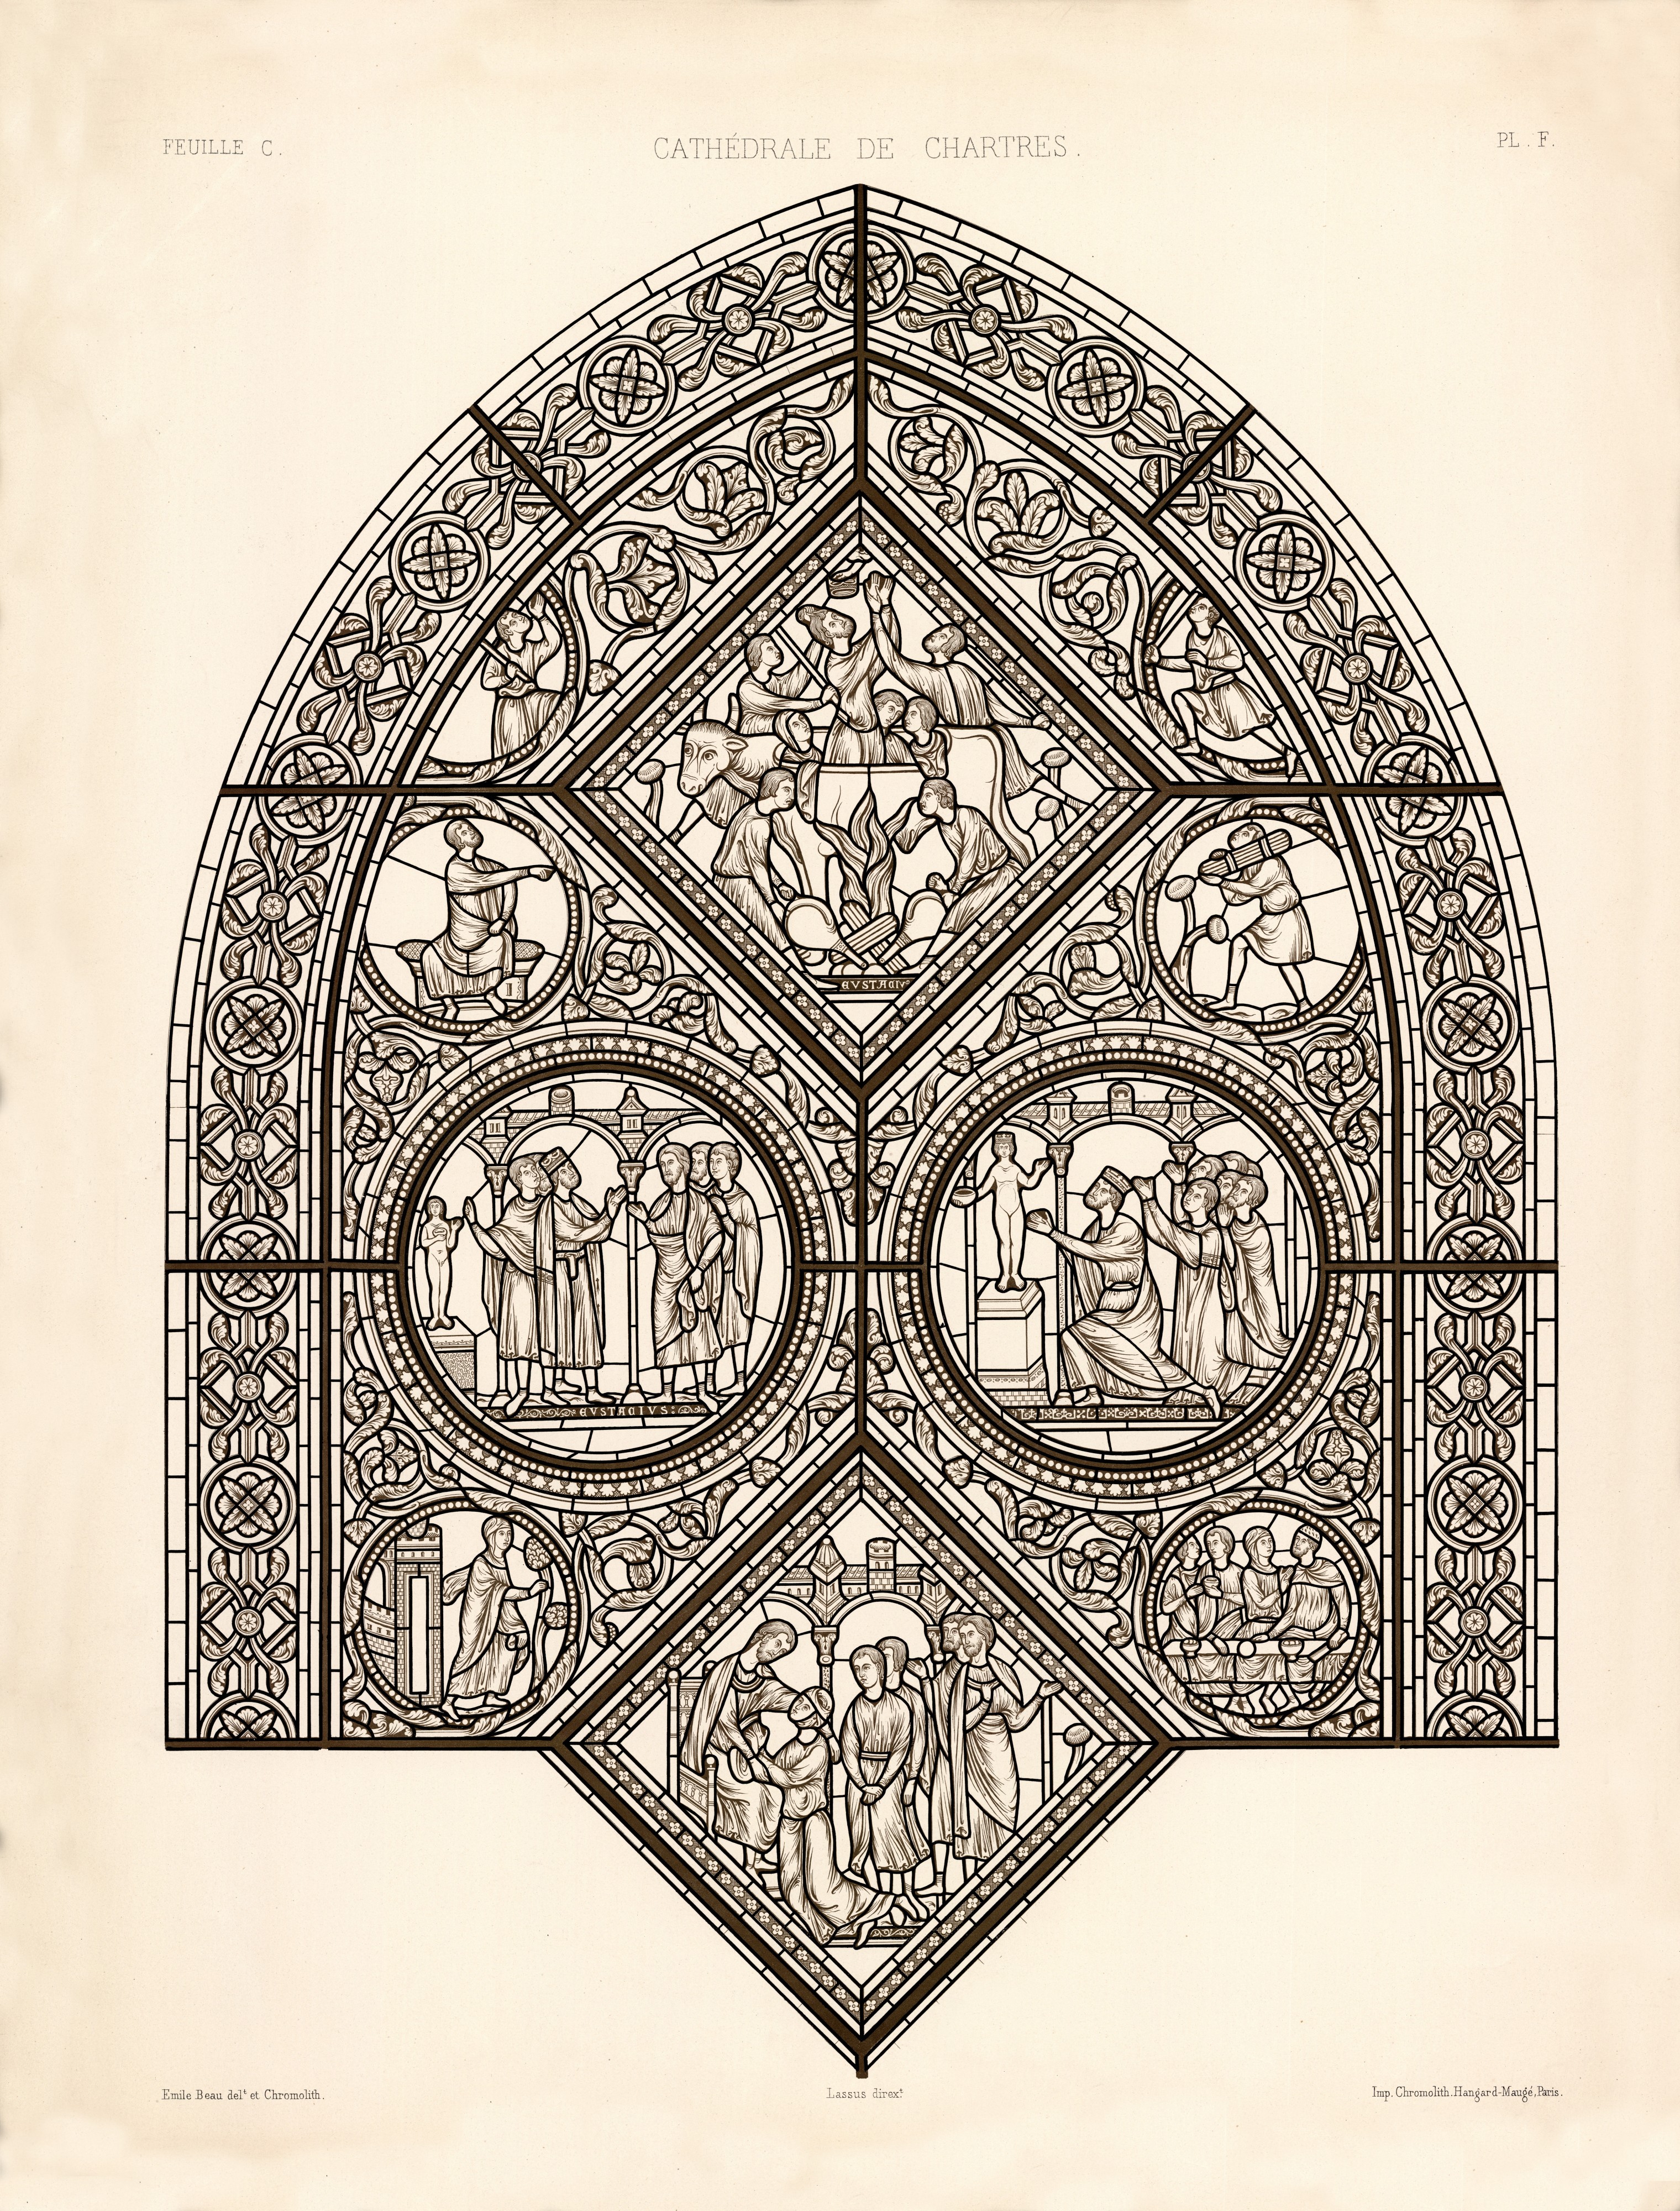 Monografie de la Cathedrale de Chartres - Atlas - Vitrail de saint Eustache - Feuille C - Lithographie